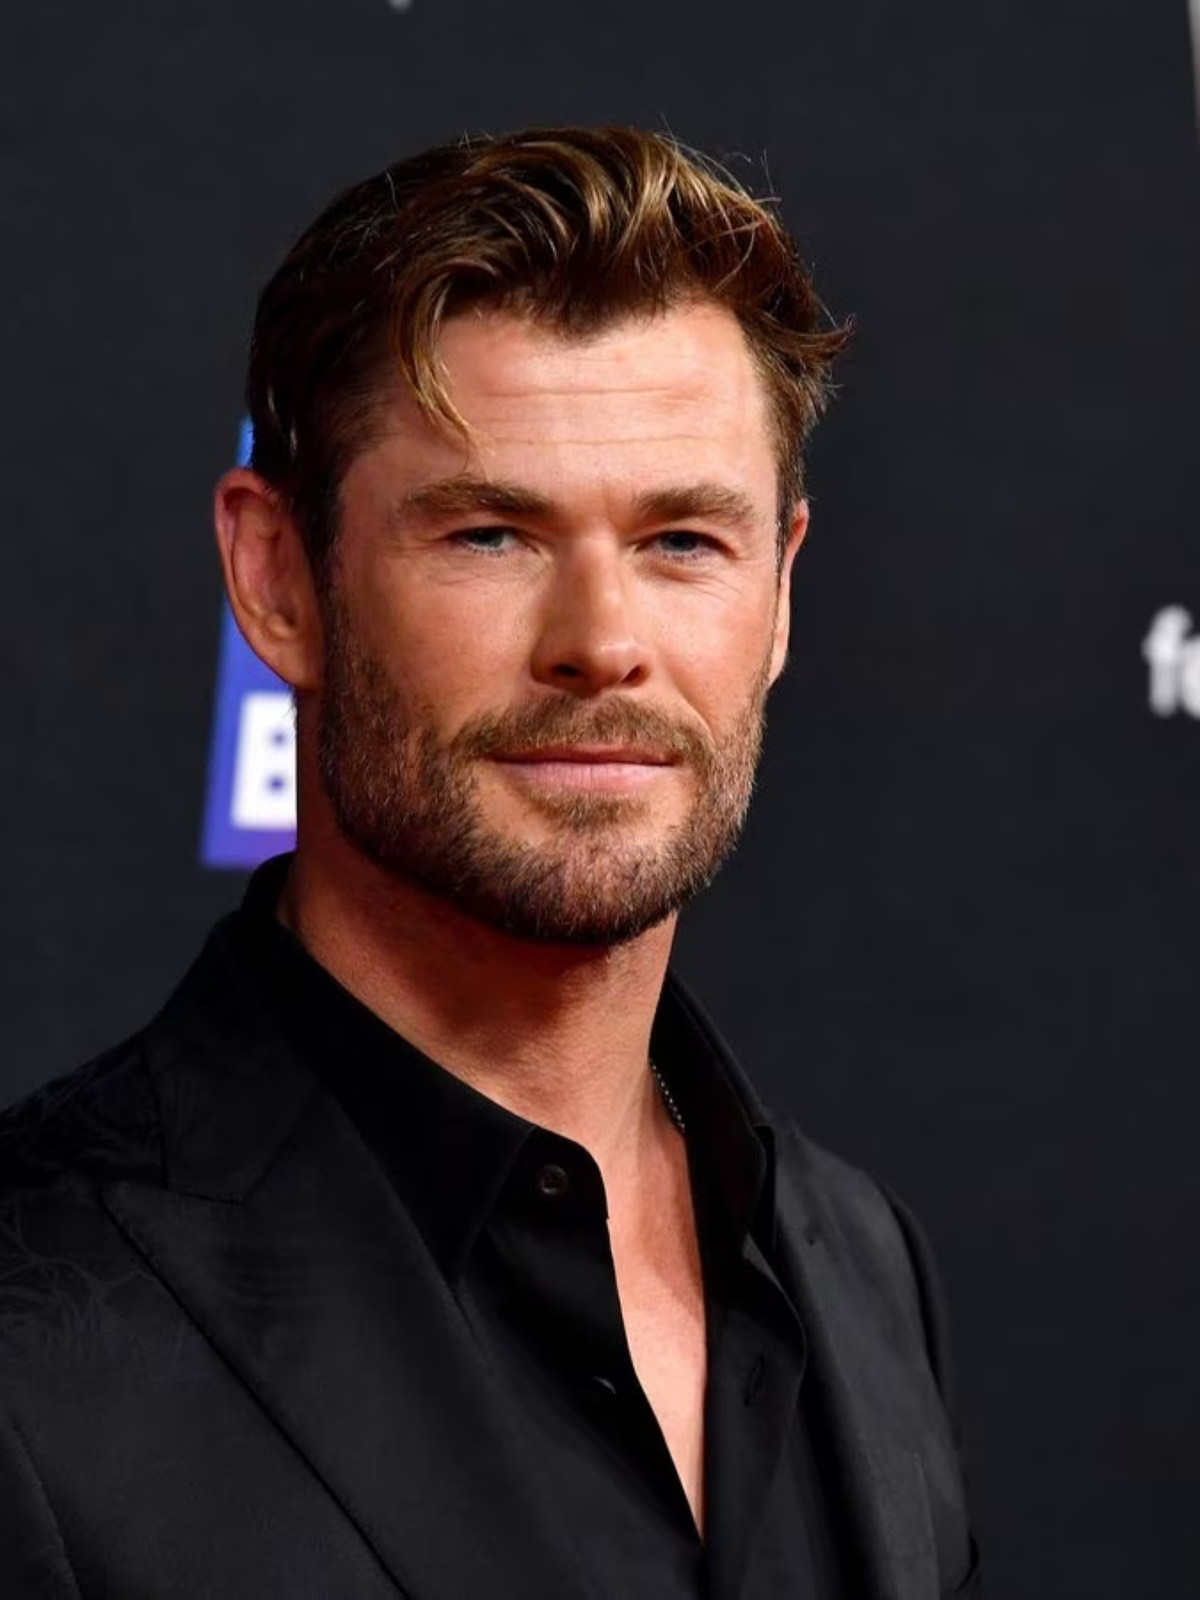 Chris Hemsworth estaria cogitando se aposentar por predisposição